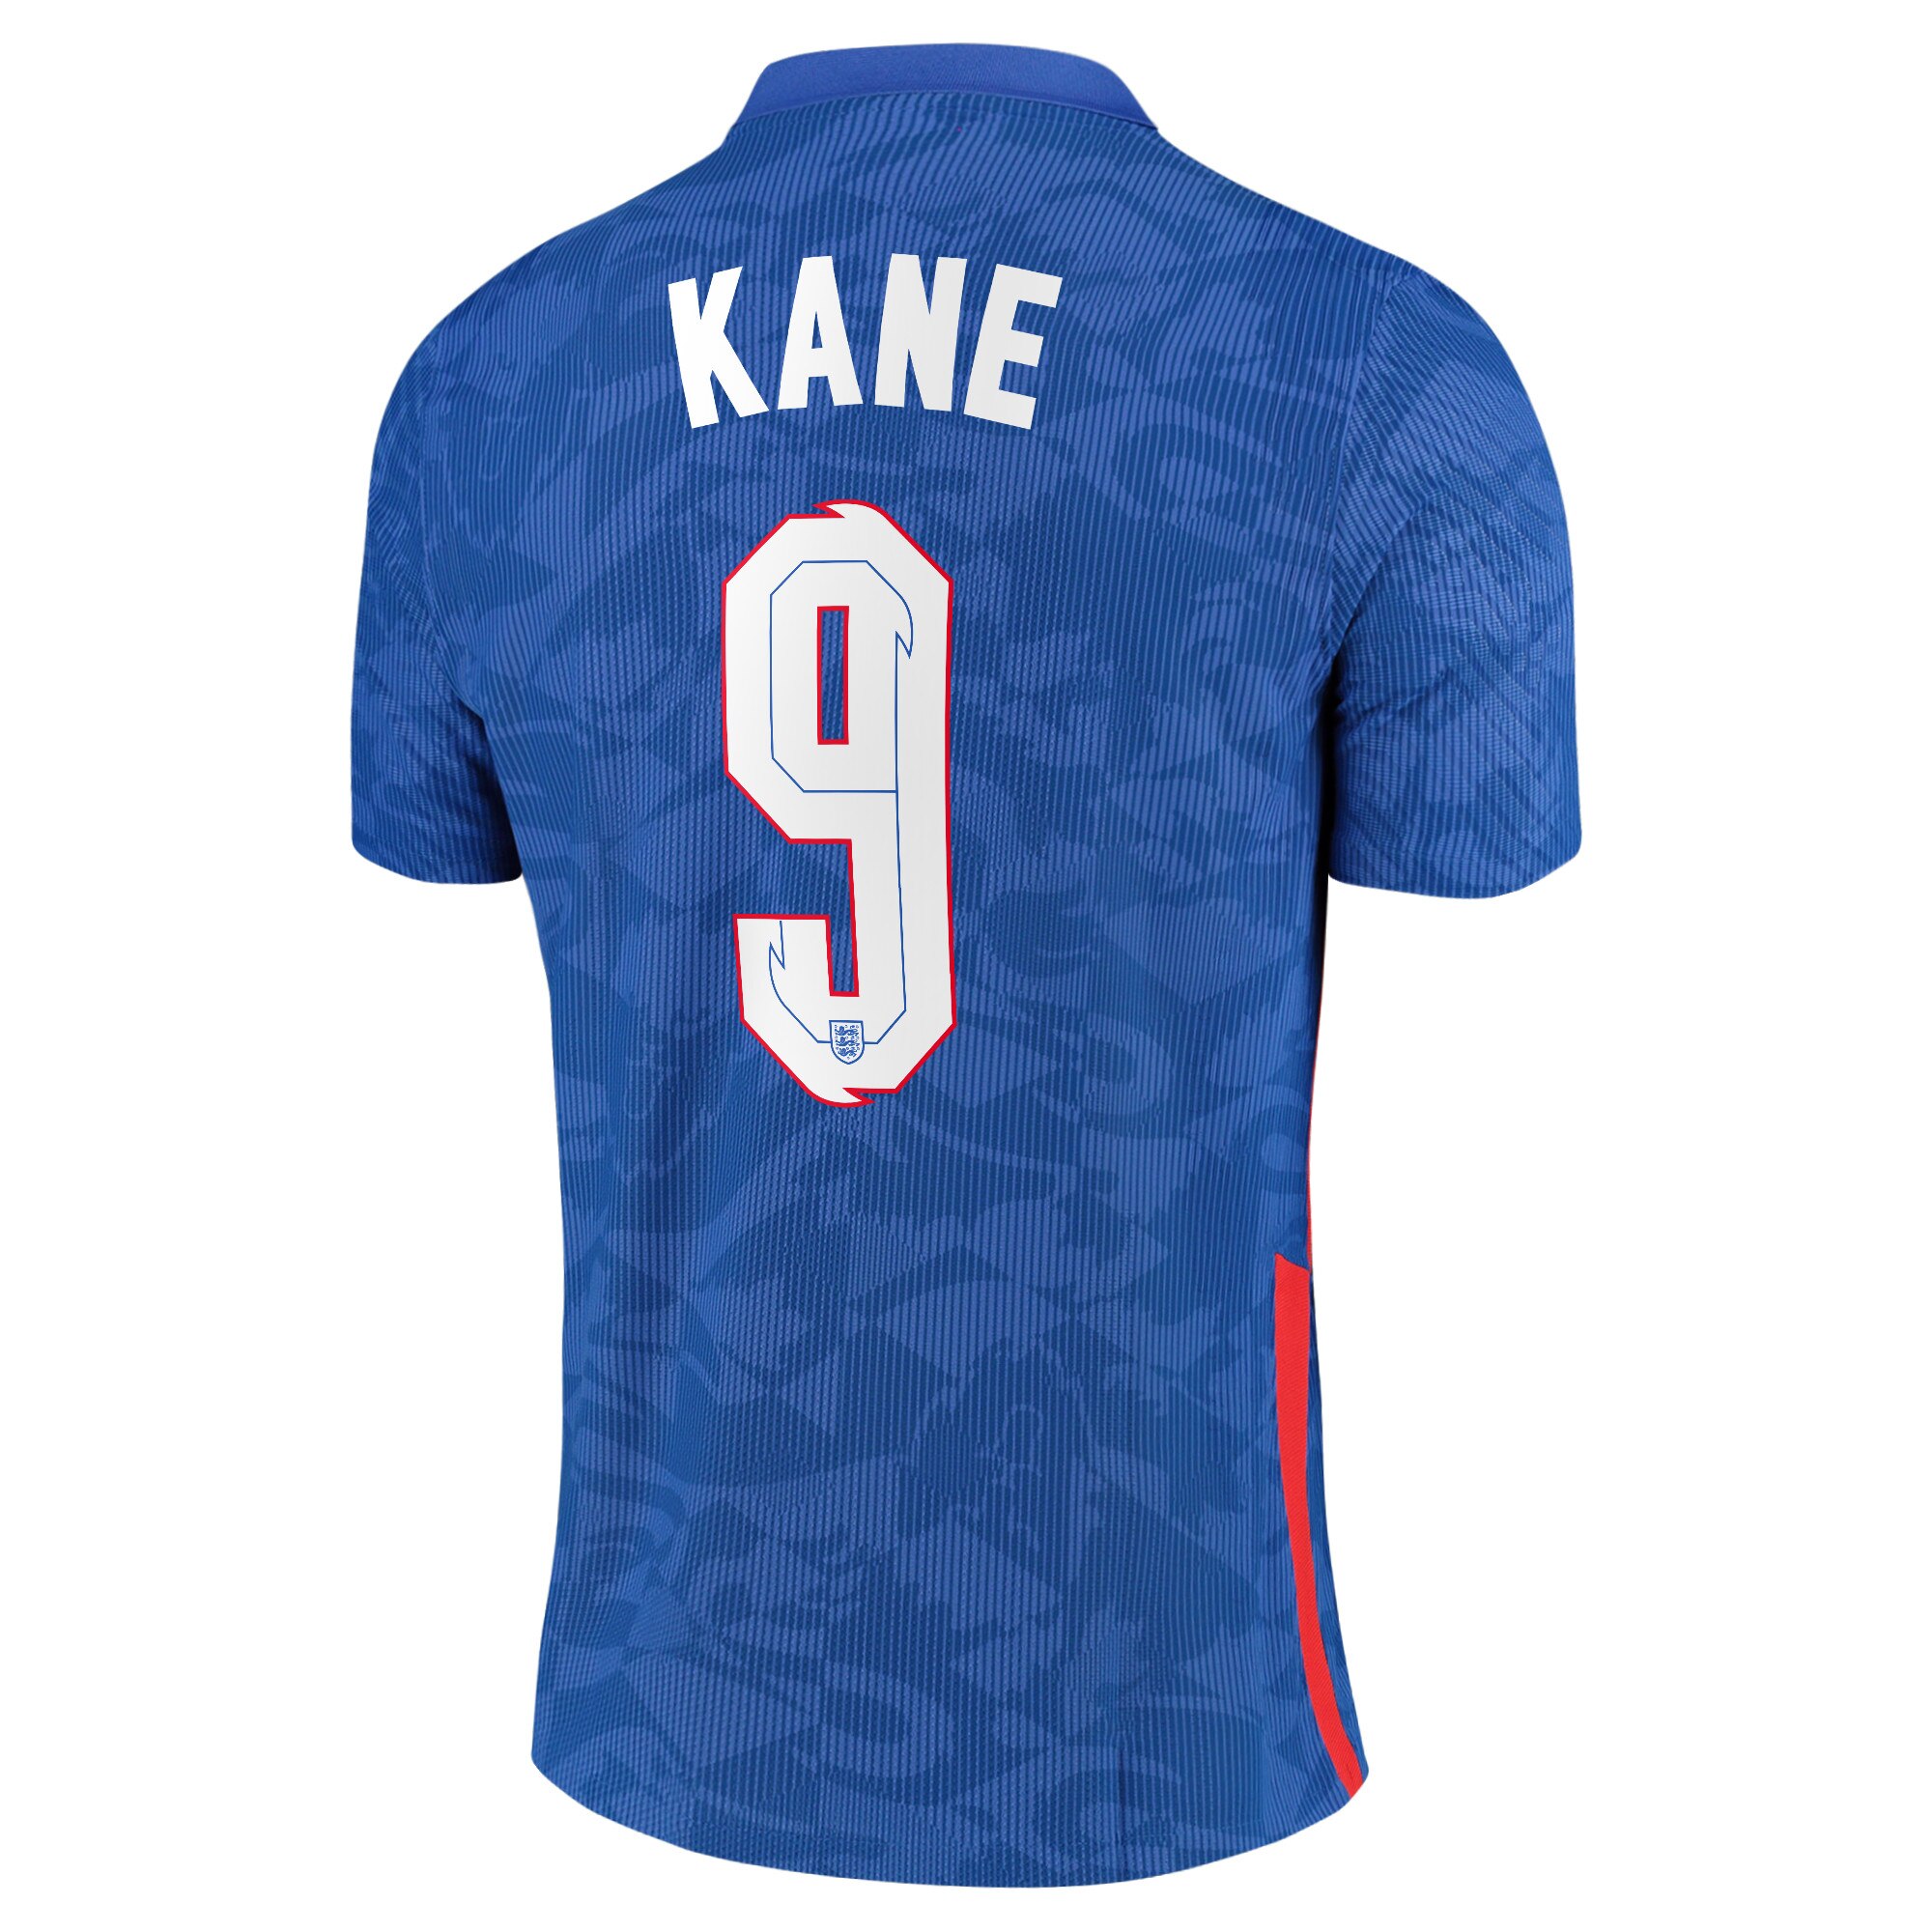 England Away Vapor Match Shirt 2020-22 with Kane 9 printing